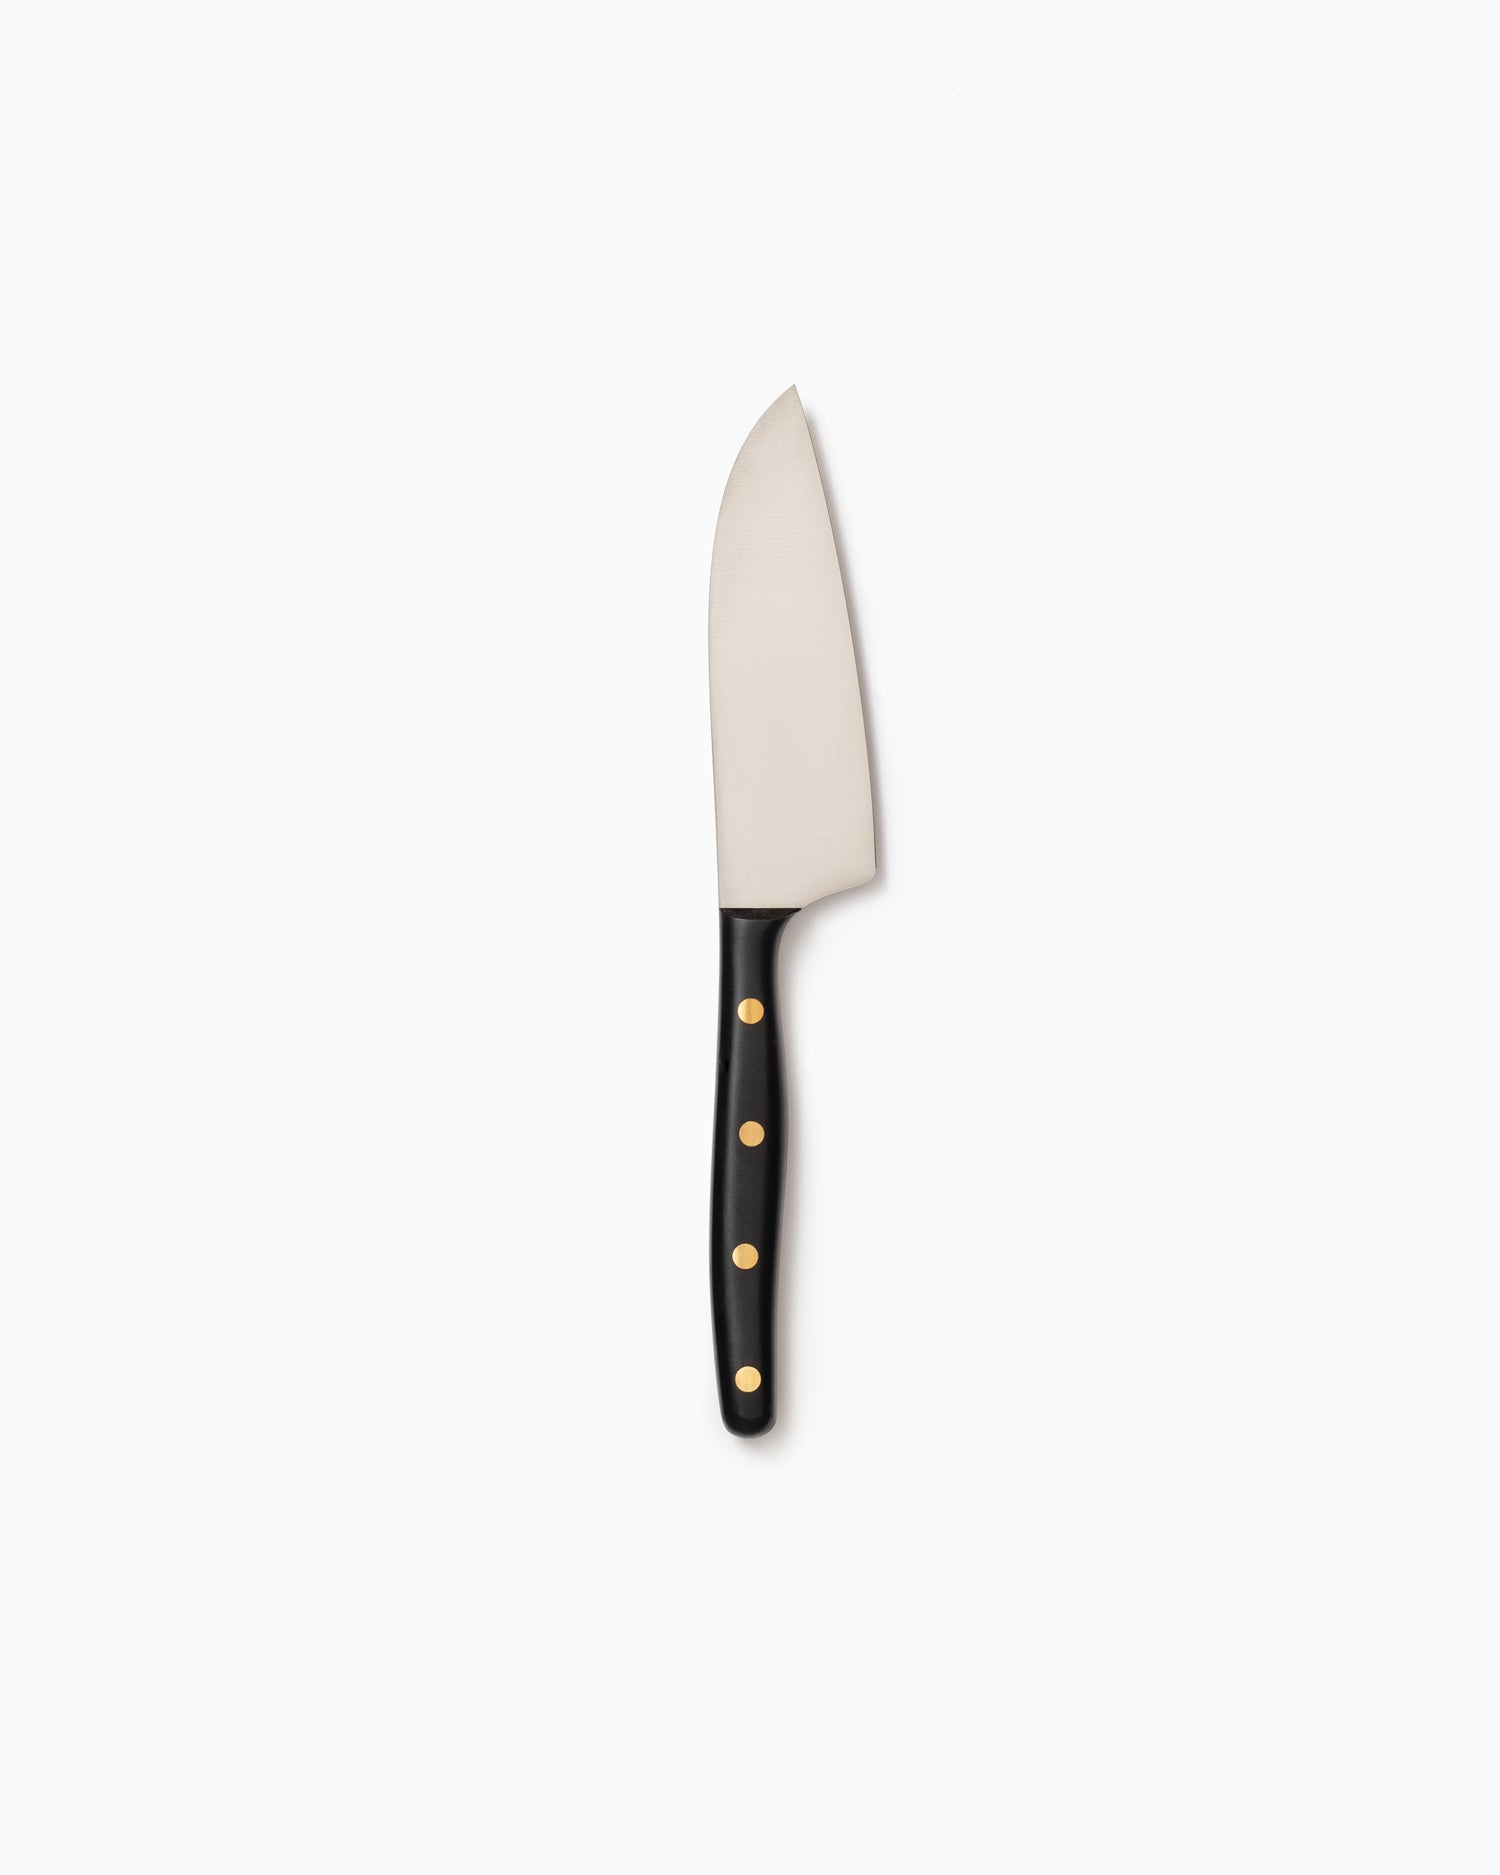 Robert Herder K2 Kitchen Knife - Stainless, Black